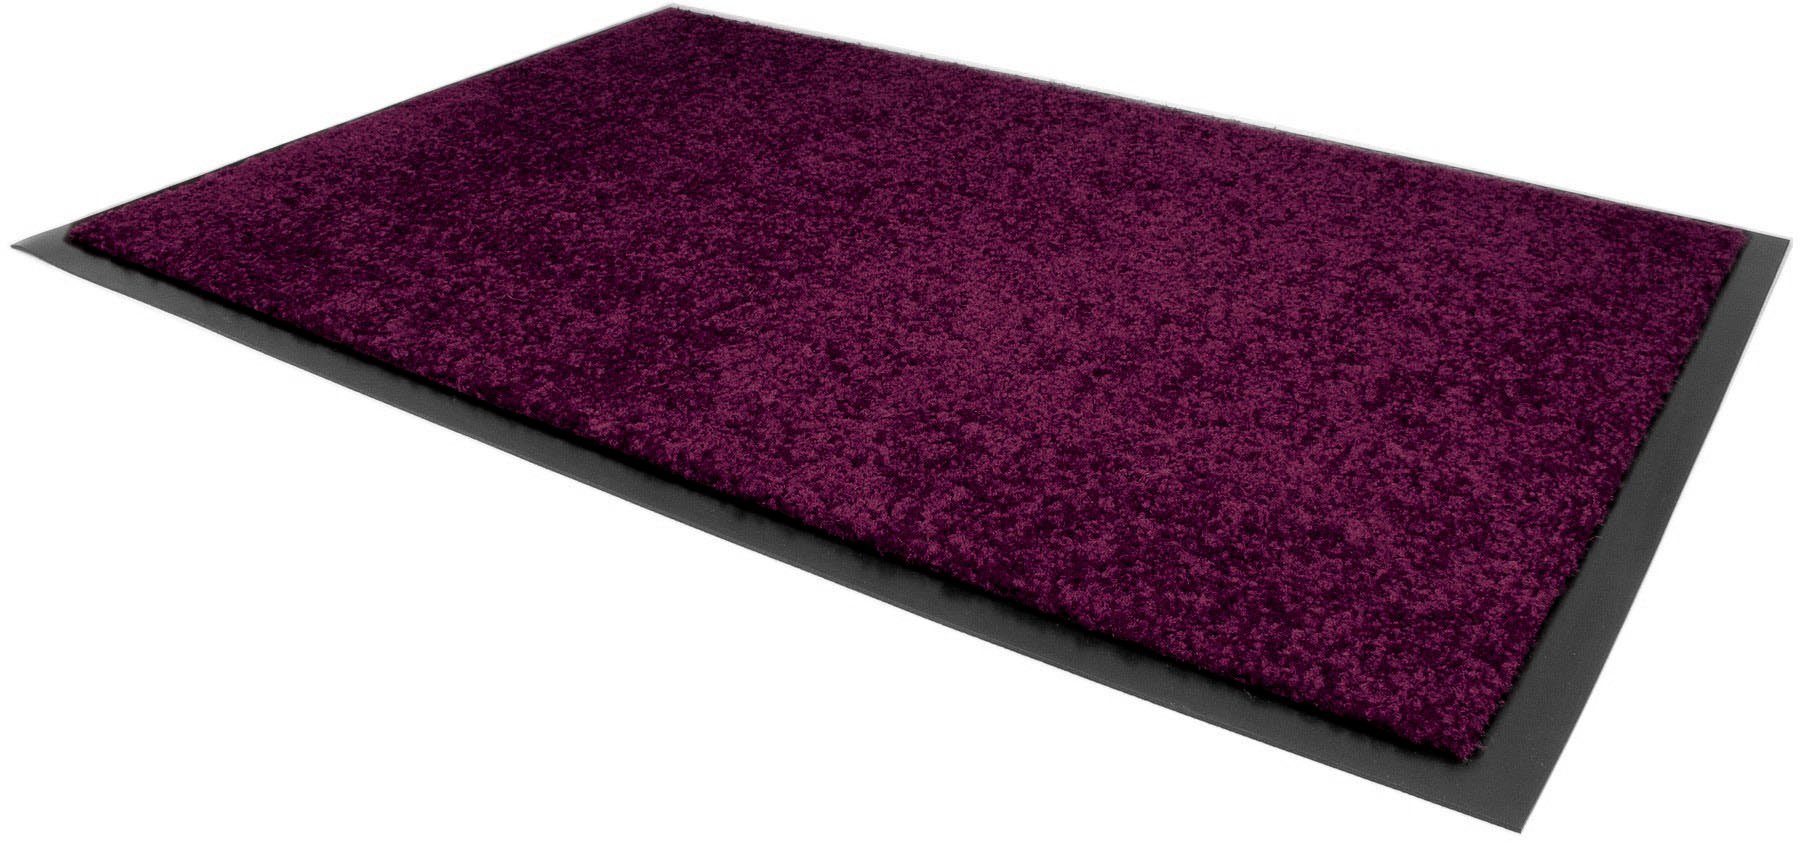 Textil, Höhe: Primaflor-Ideen Schmutzfangmatte Uni-Farben, mm, CLEAN lila Fußmatte in rechteckig, PRO, UV-beständig, waschbar 8 Schmutzfangmatte,